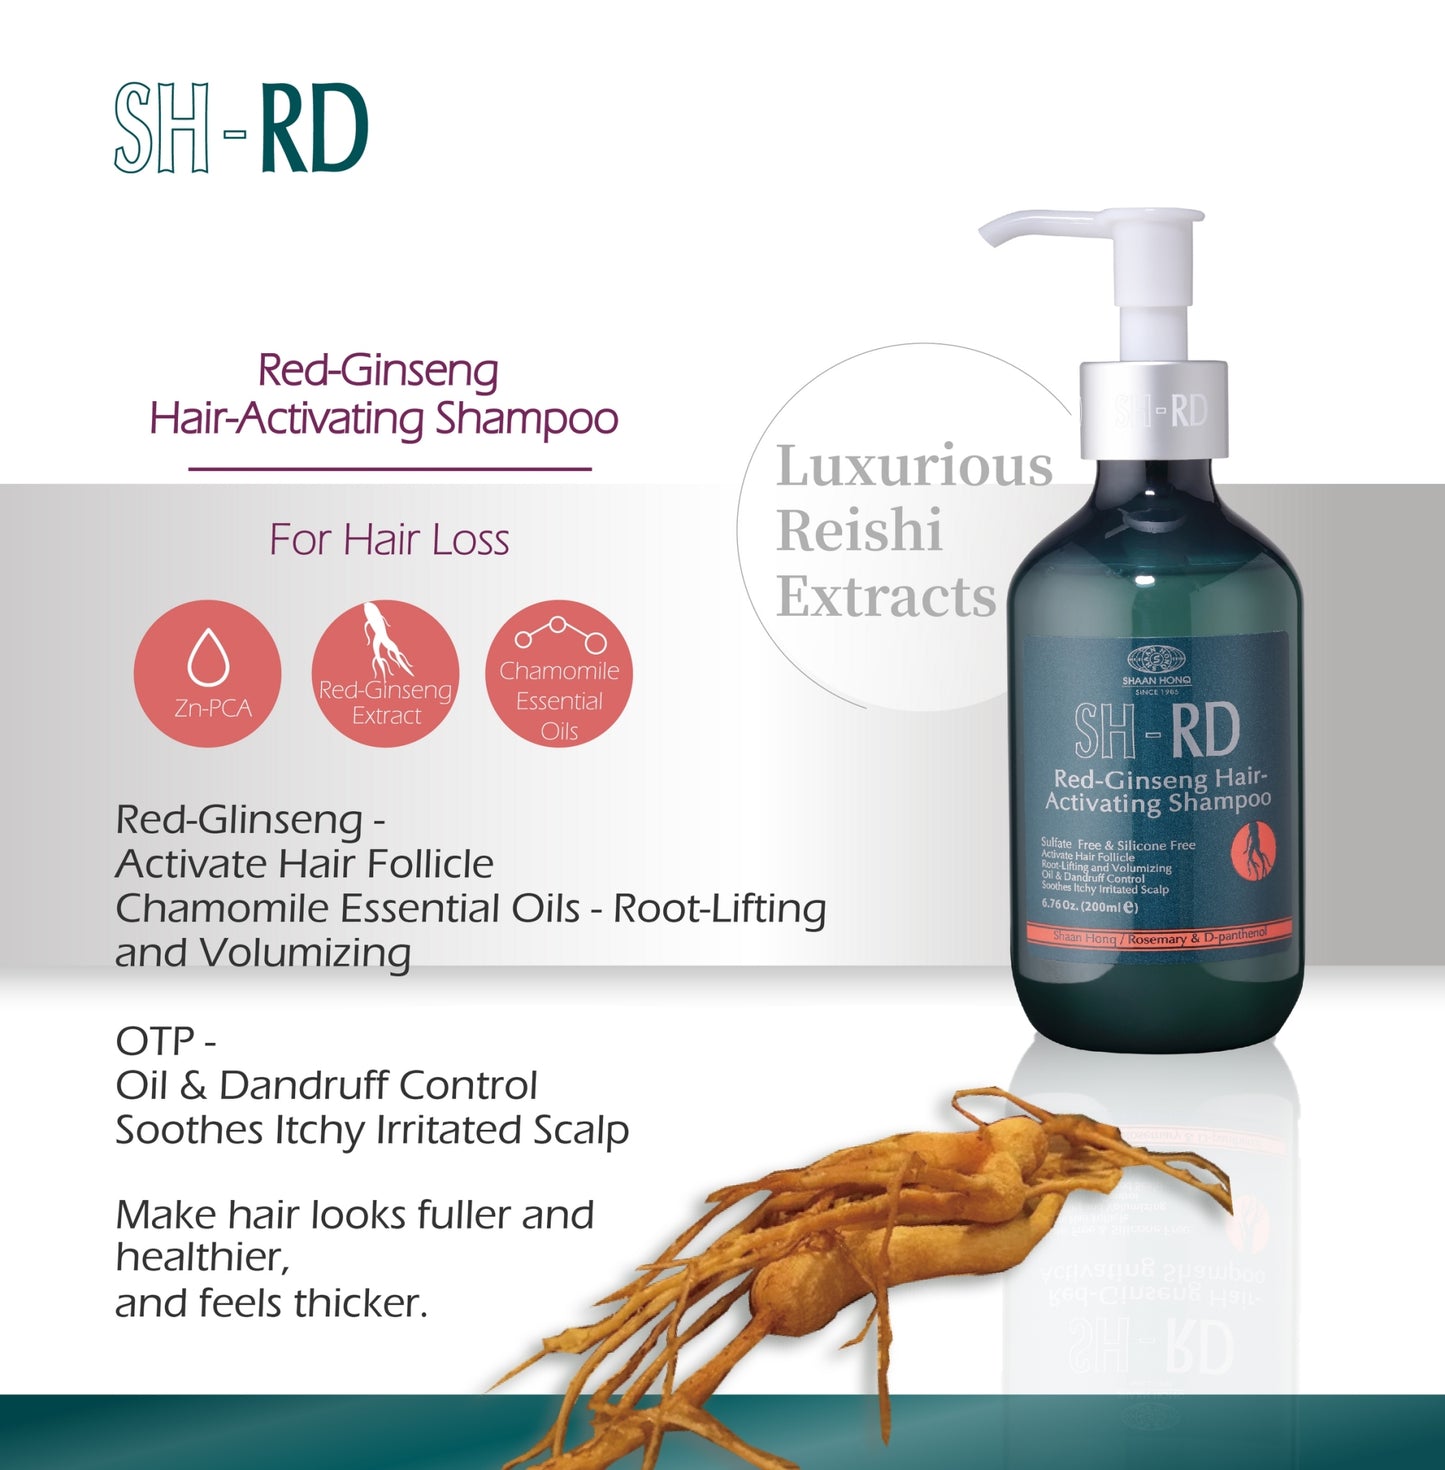 SH-RD Red-Ginseng Hair-Activating Shampoo (6.76oz/200ml)